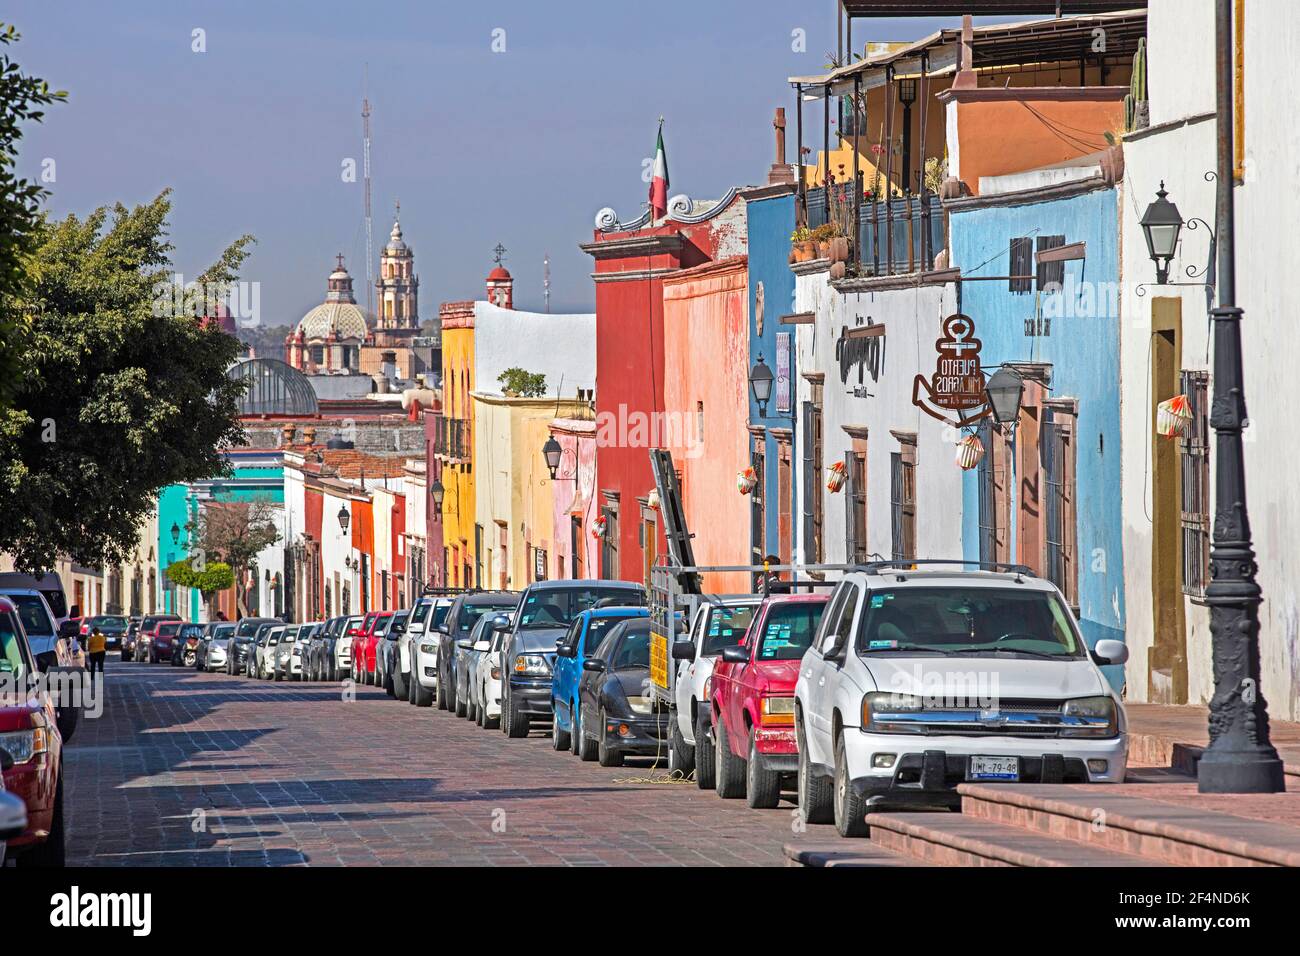 Case colorate in strada coloniale nel centro storico di Querétaro, Messico centro-settentrionale Foto Stock